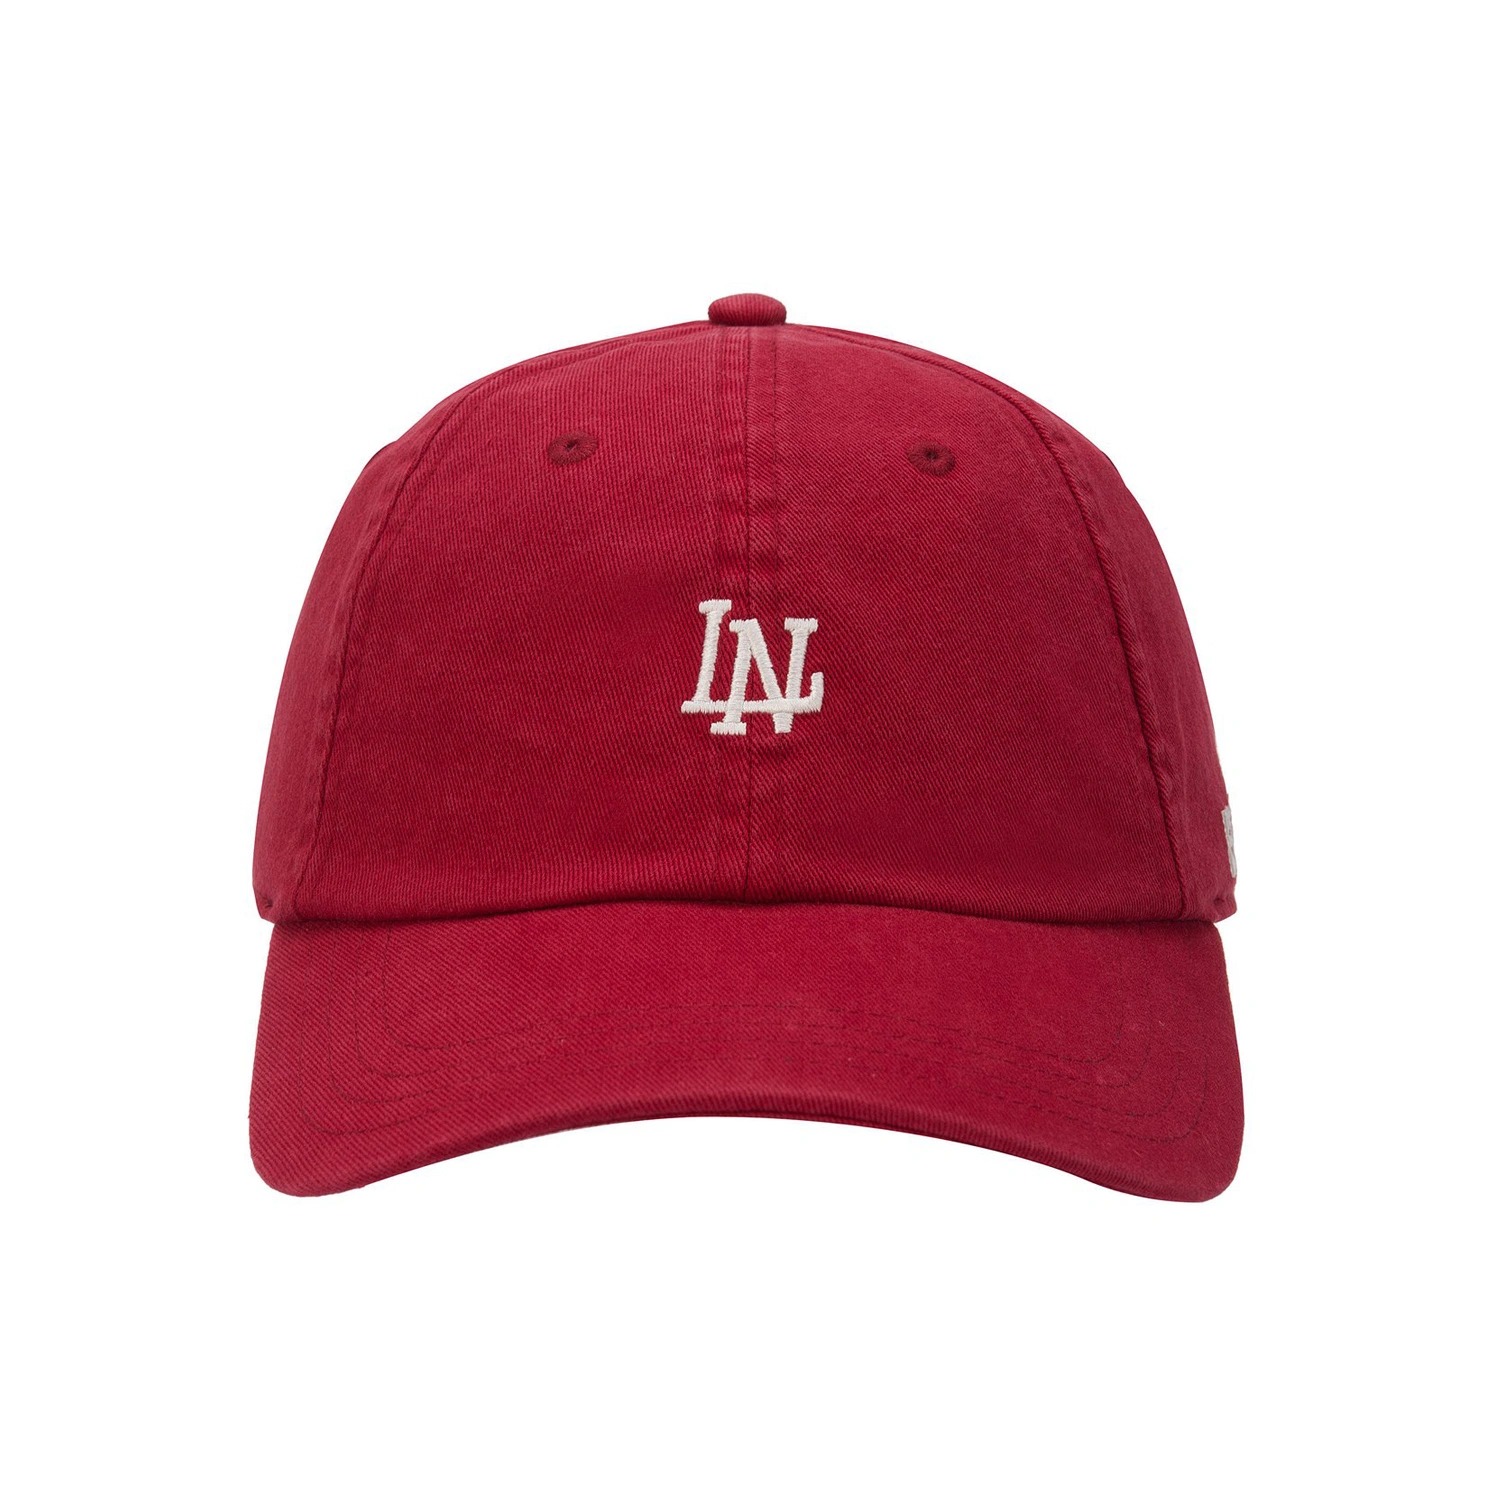 運動時尚系列棒球帽 - 紅